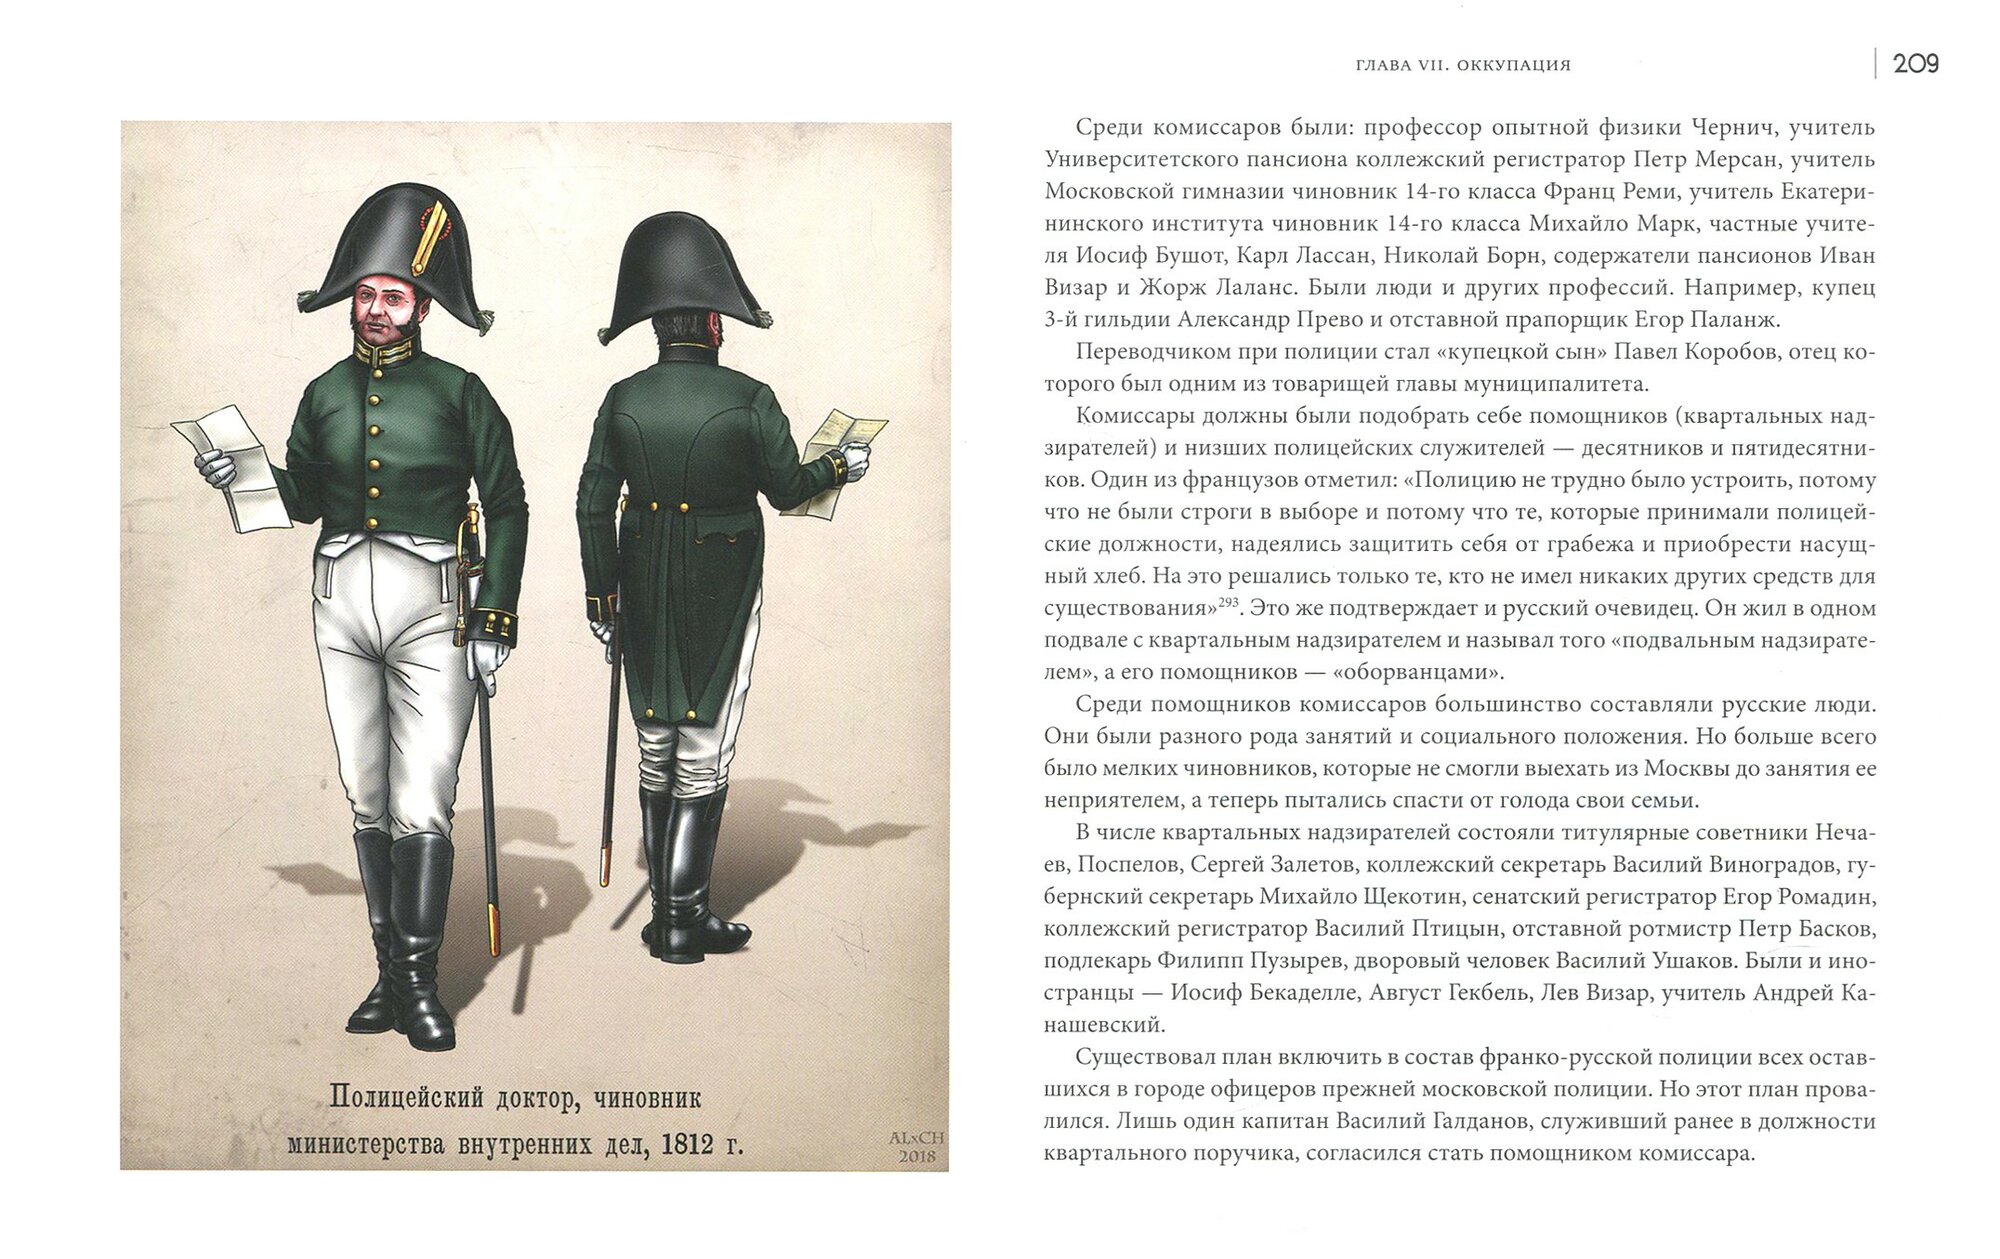 Граф Ростопчин и московская полиция в 1812 году - фото №8